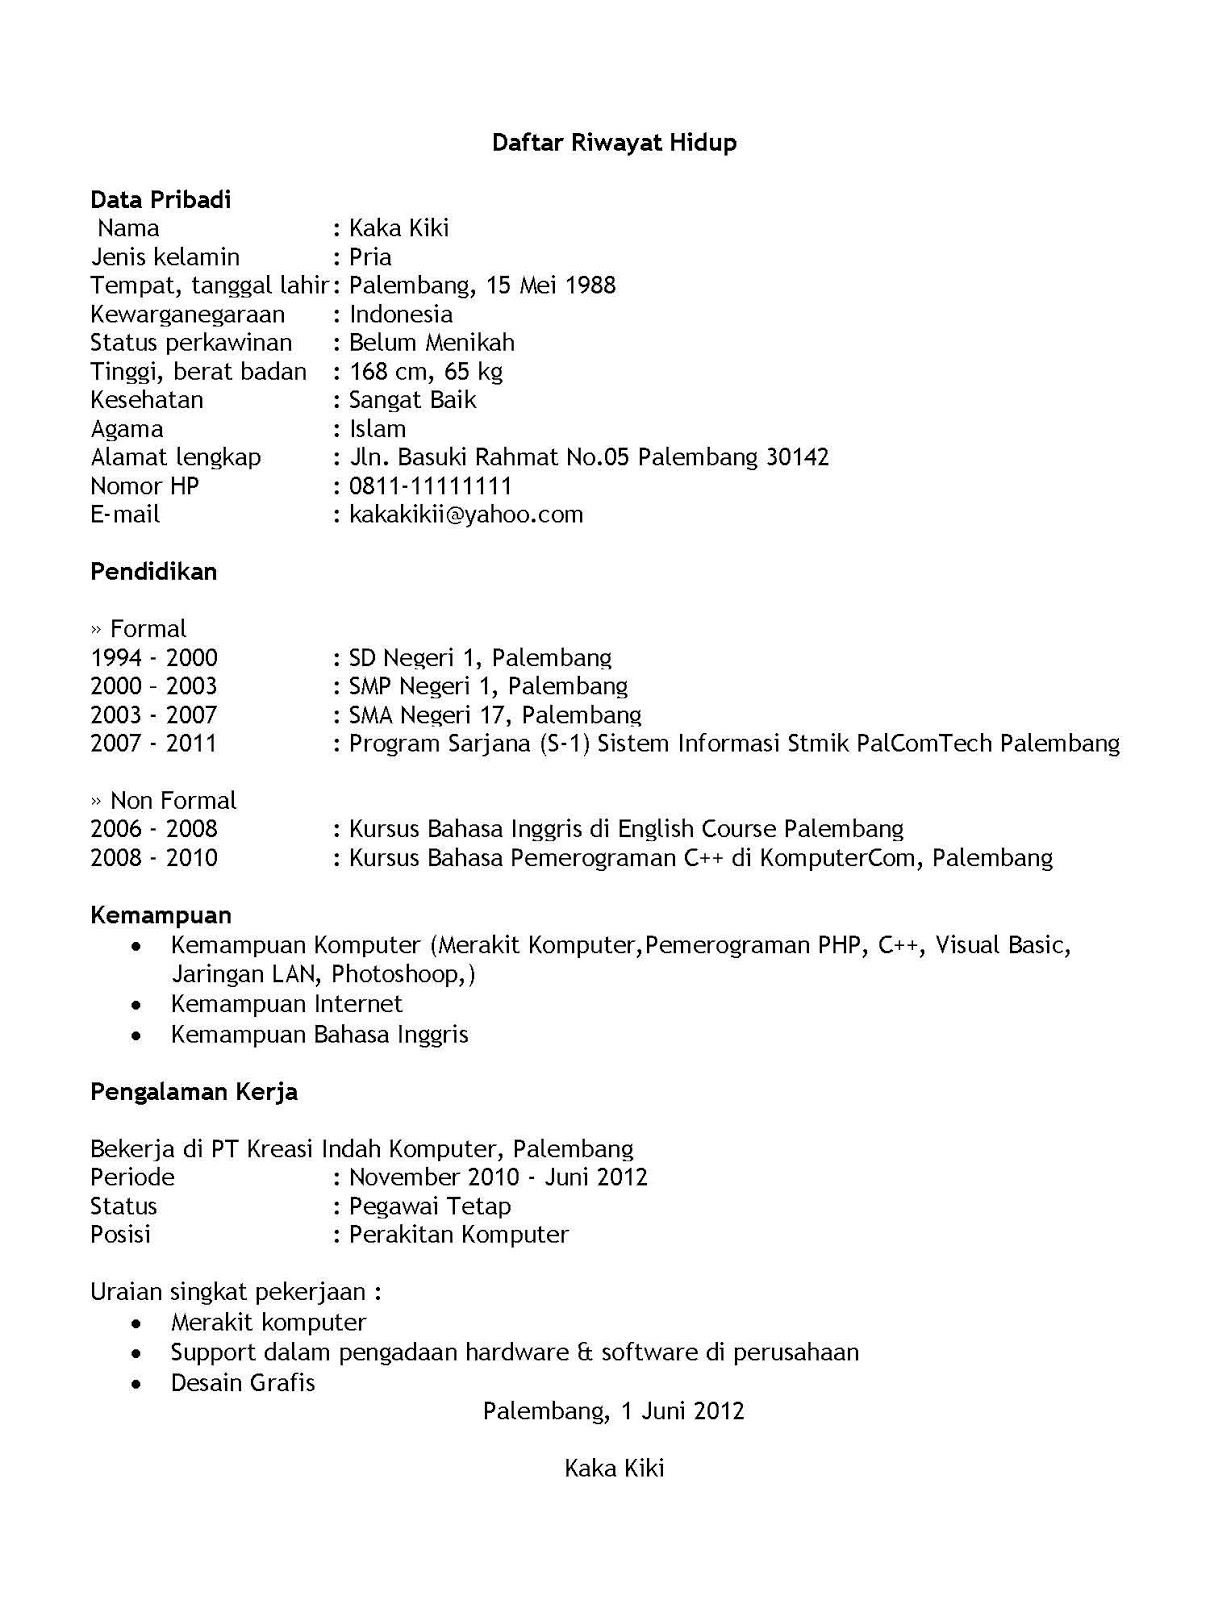 koleksi contoh resume lengkap terbaik dan terkini contoh resume format resume kosong contoh format resume